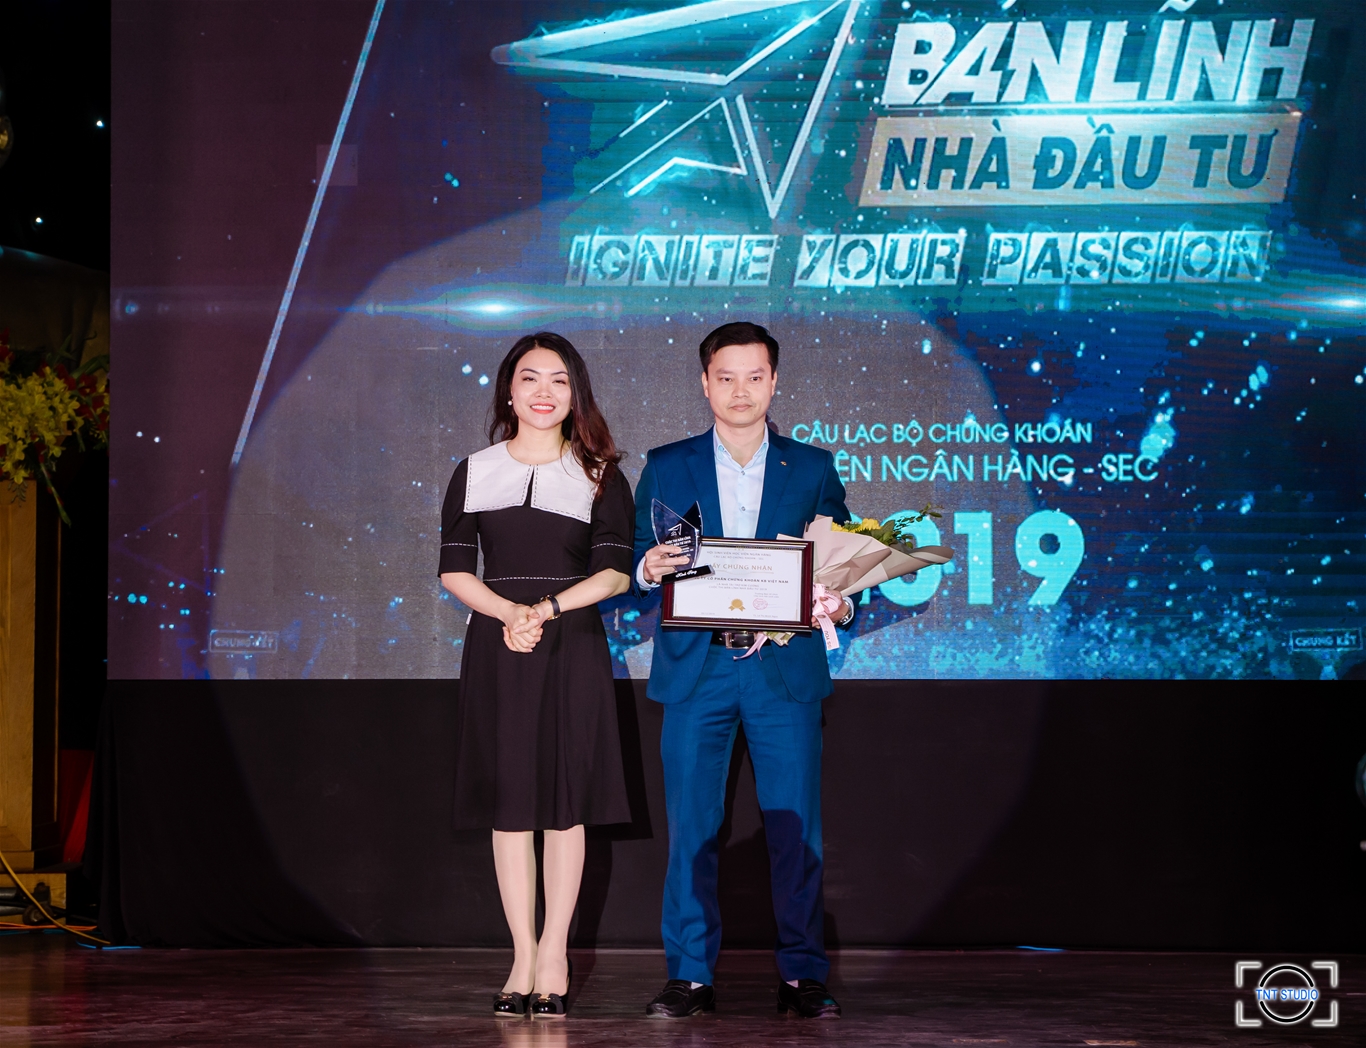 Đại diện KBSV - Ông Nguyễn Xuân Bình - Giám đốc Khối Phân tích KBSV đã nhận hoa và kỷ niệm chương trong đêm chung kết Bản lĩnh Nhà đầu tư 2019